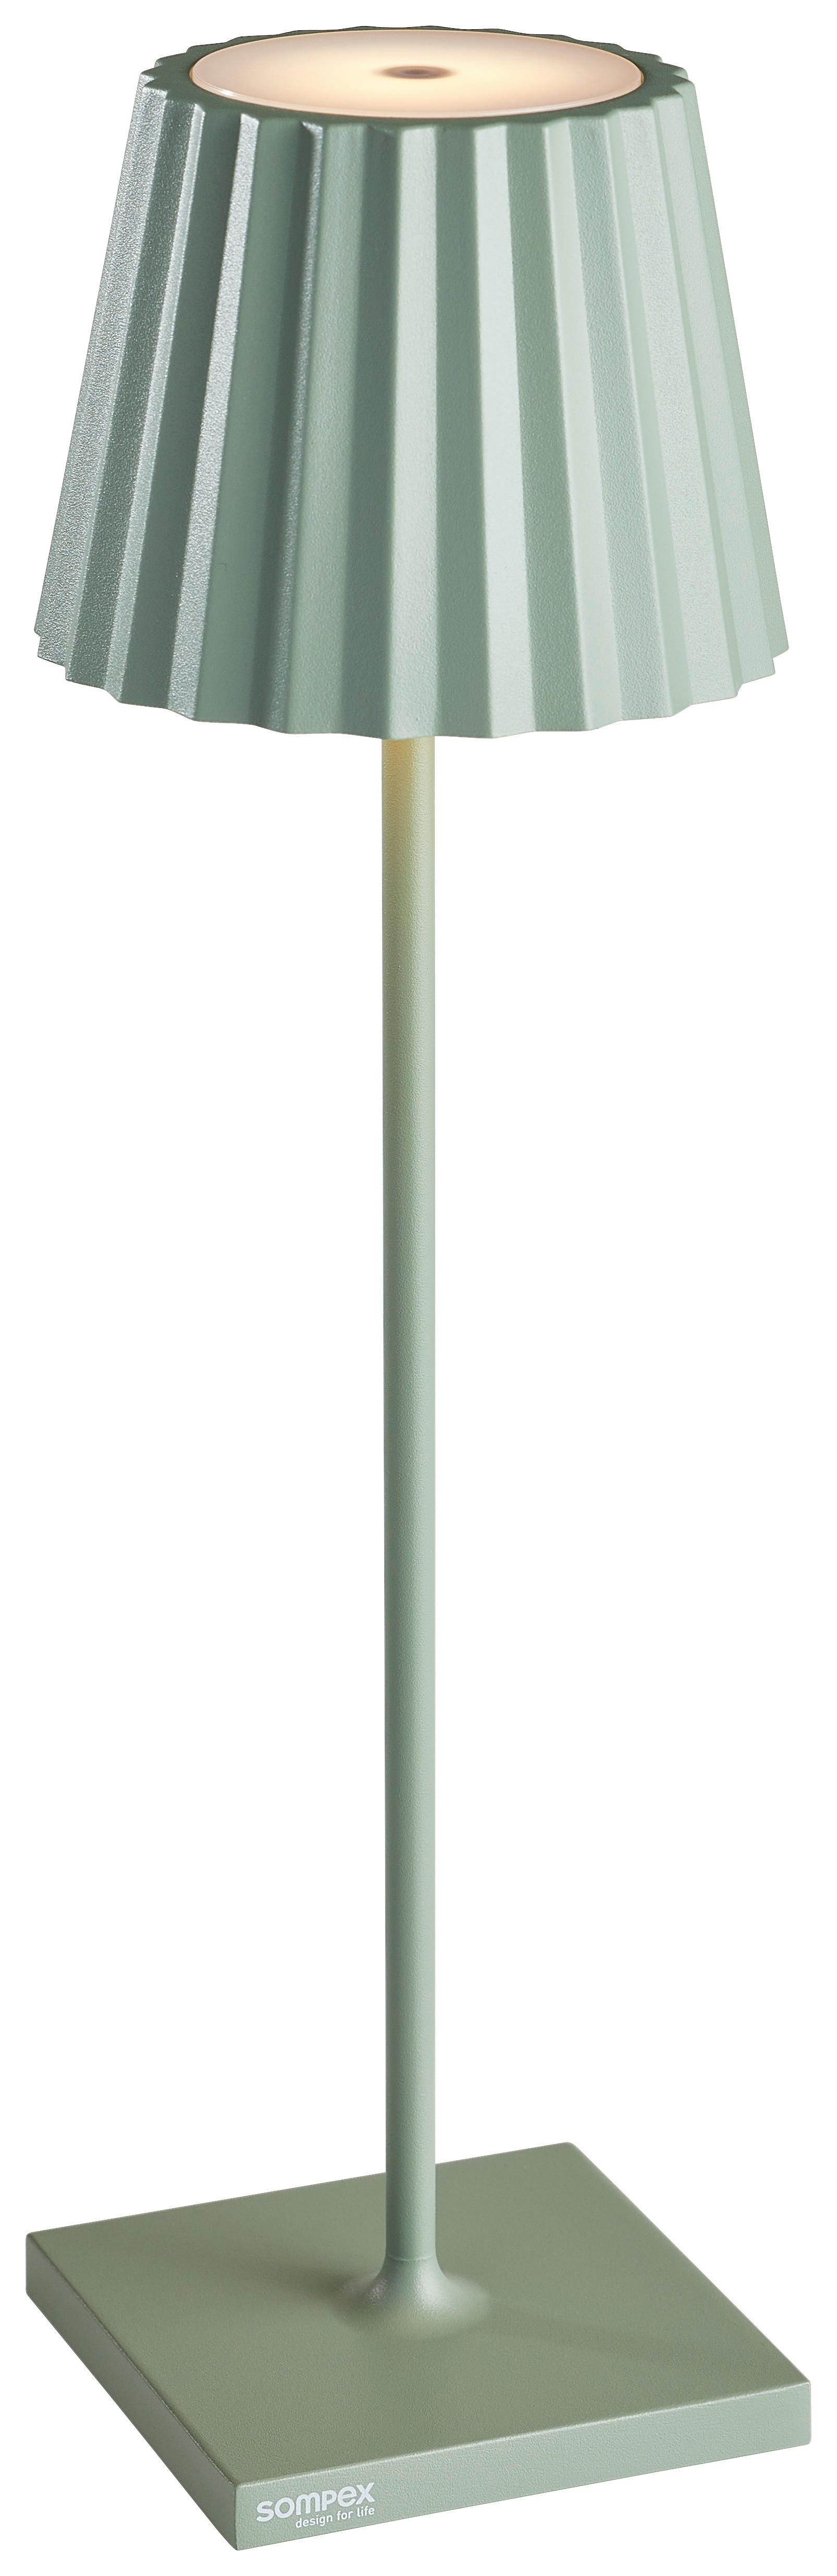 LED-TISCHLEUCHTE Troll  - Weiß/Grün, Design, Metall (11cm) - Sompex